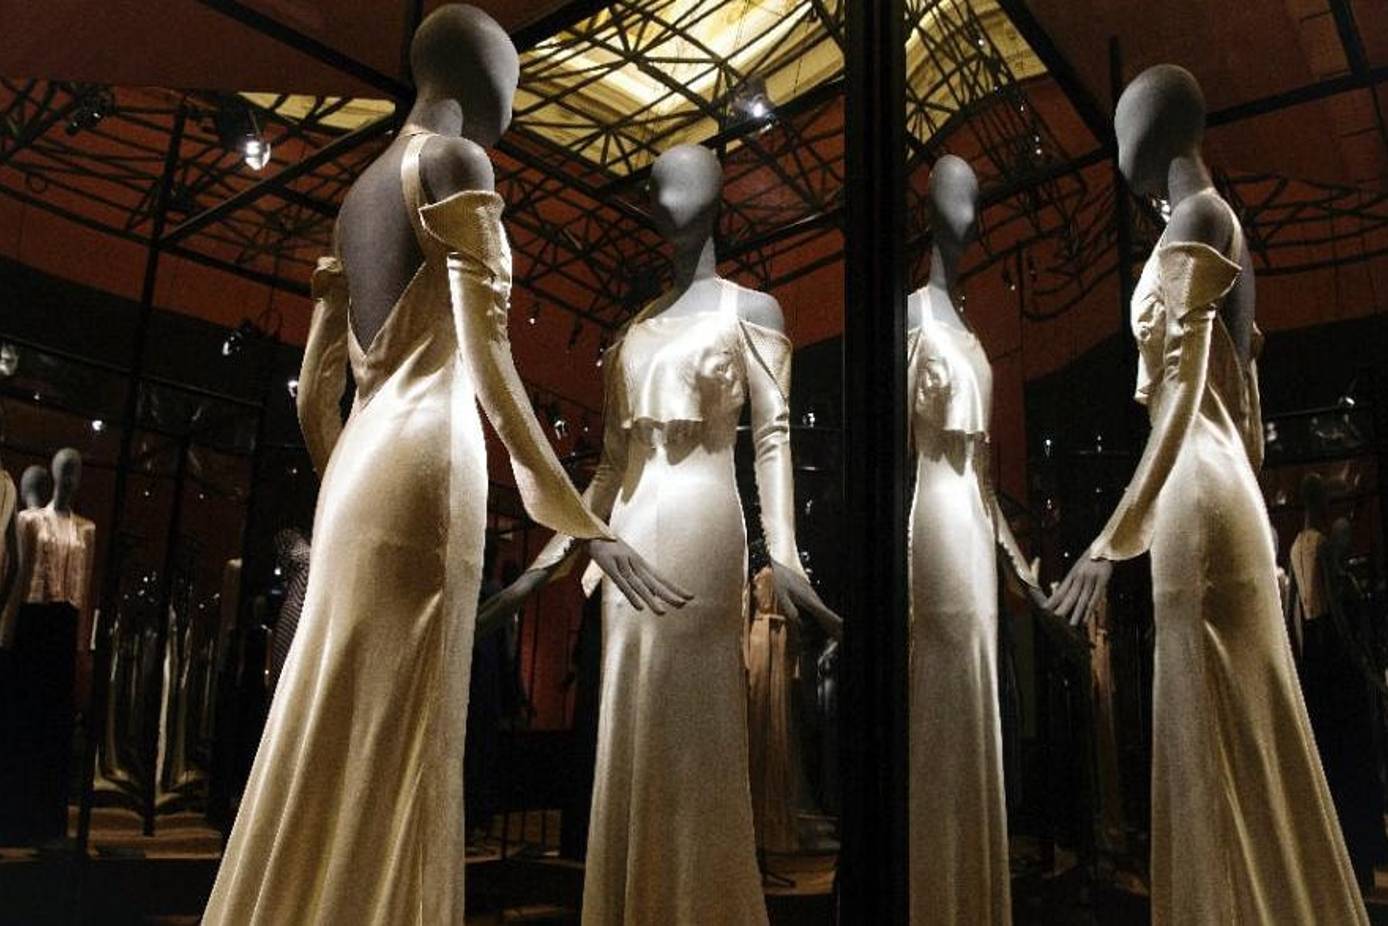 Paris Fashion Week expo showcases Jeanne Lanvin's subtle elegance